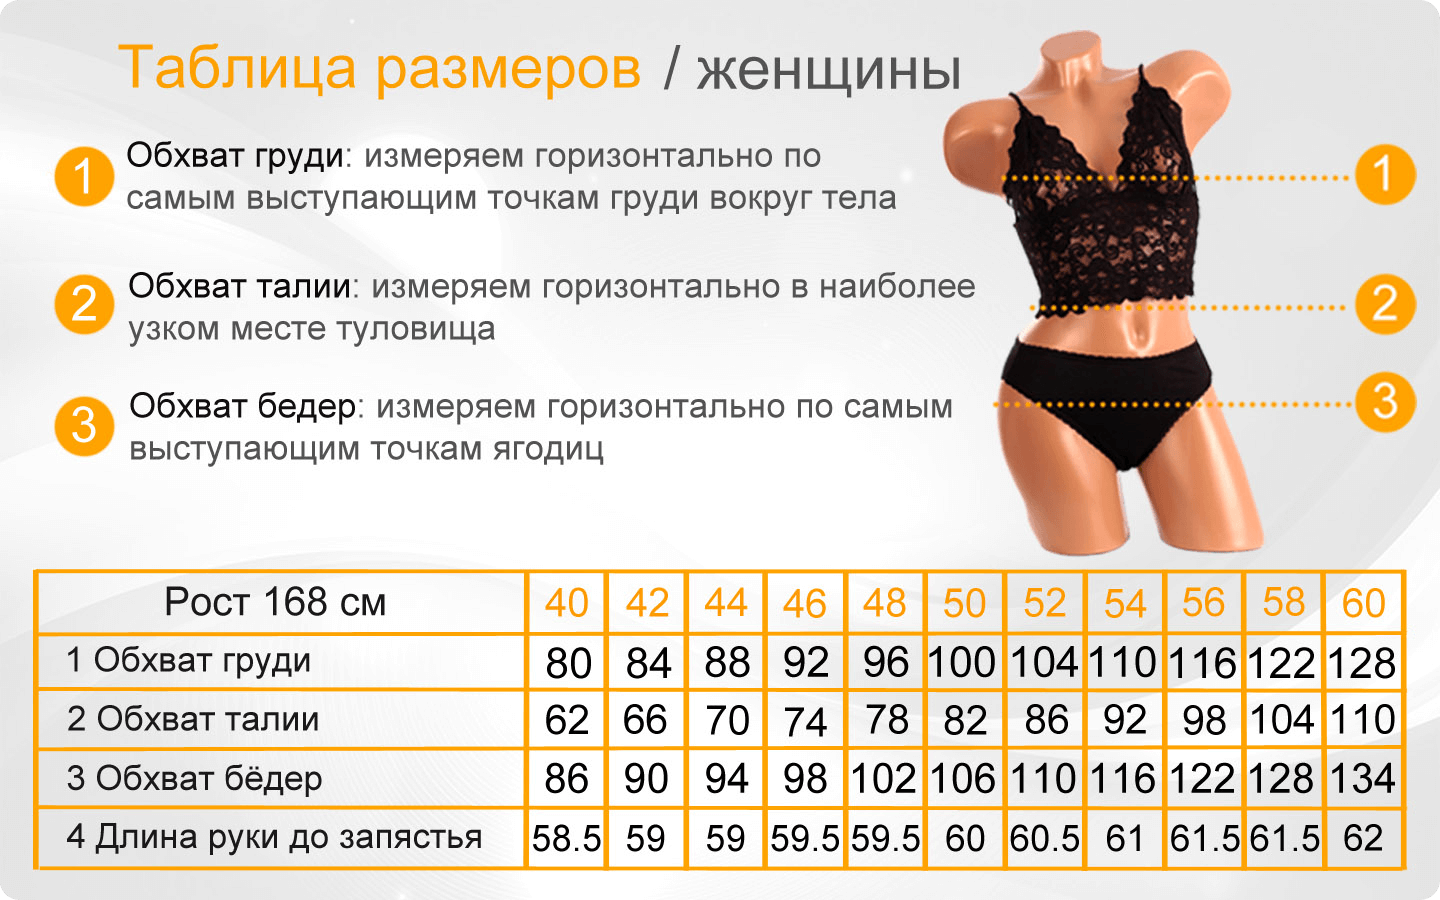 Размер женский 6 8. Таблица размеров женской одежды. Таблица размеров для женщин. Размерная таблица для женщин. Размеры одежды для женщин.